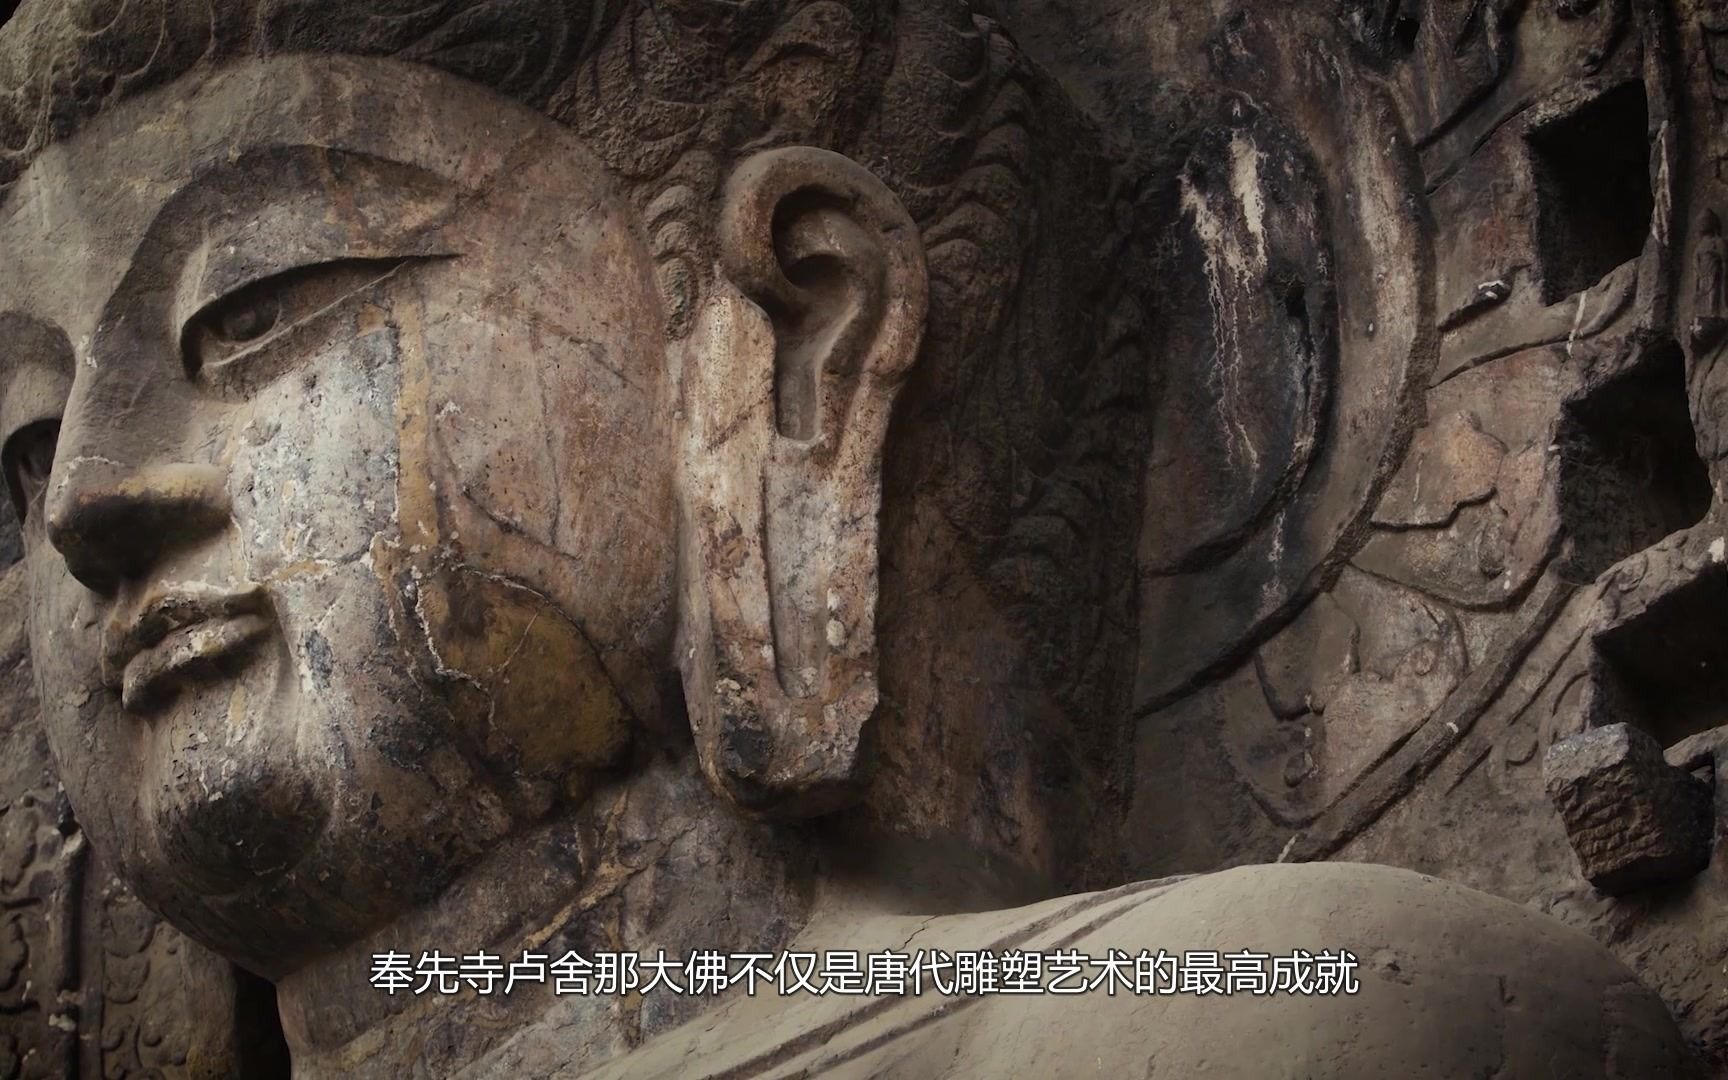 中国石刻艺术巅峰之作——龙门石窟景区。 作为官方石刻艺术宝库之一，亲眼所见，感古人智慧，品历史之韵，不枉此行。